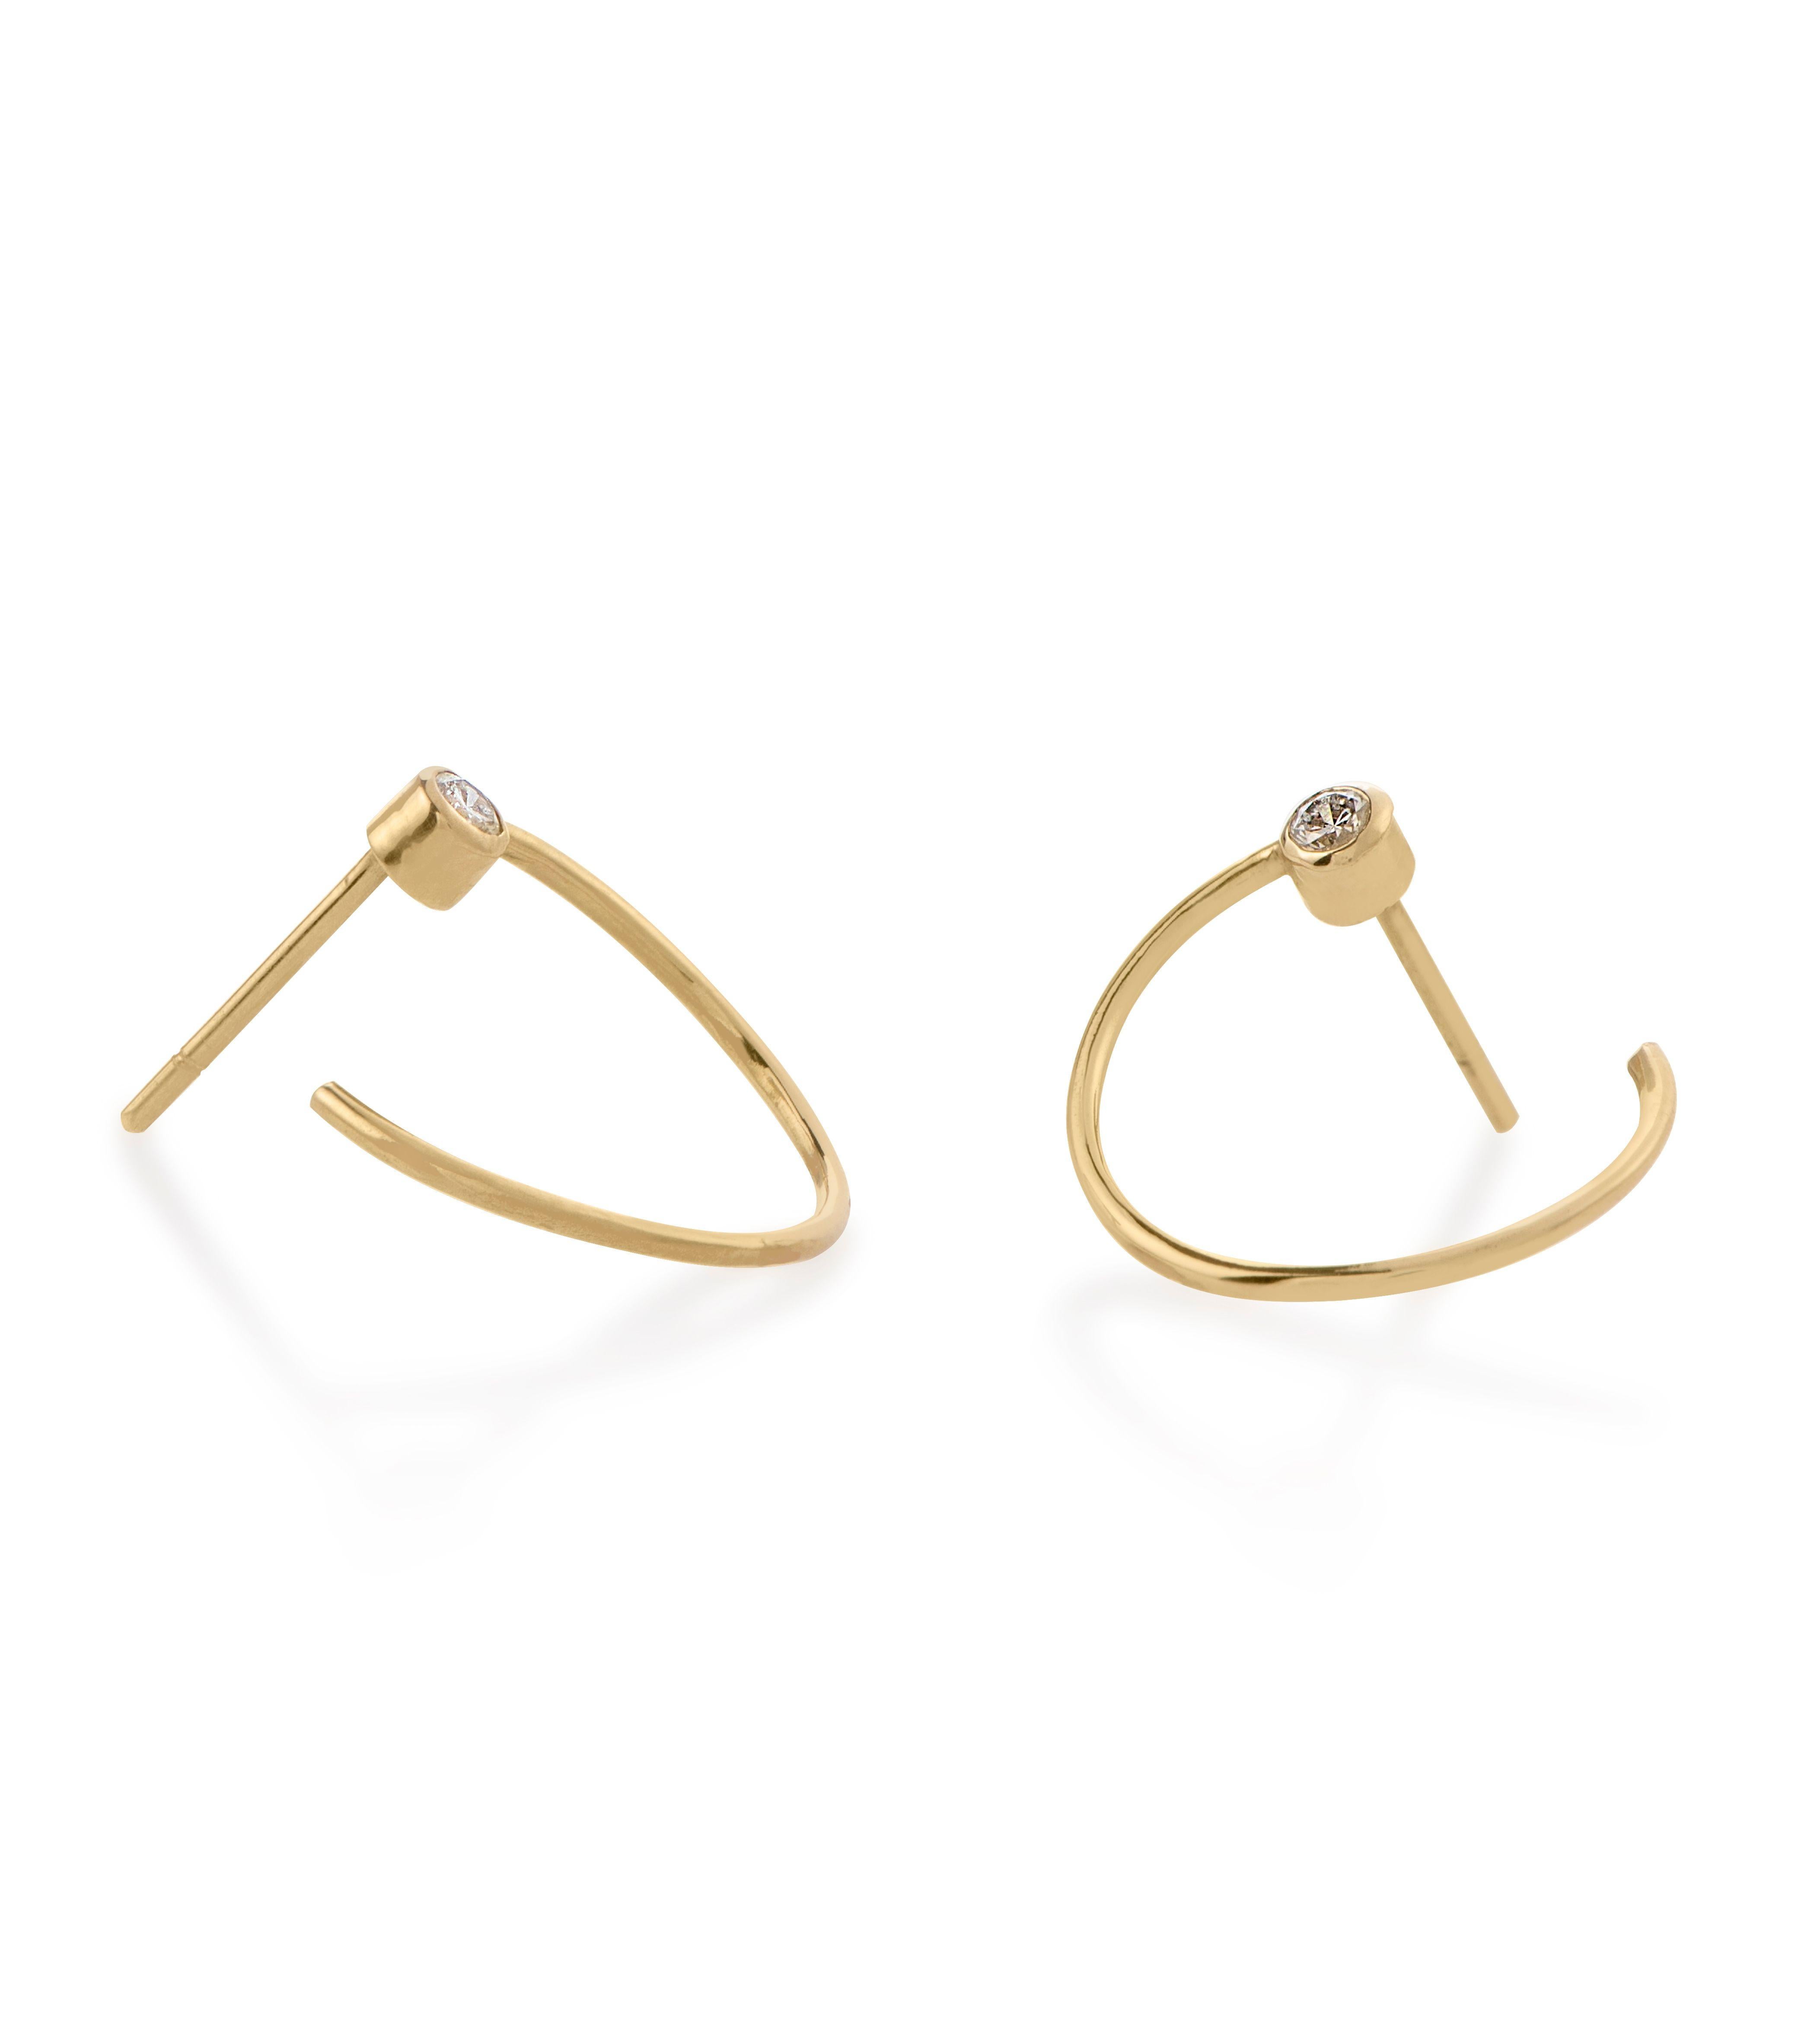 Les boucles d'oreilles Eternal Hoop sont fabriquées à la main en or jaune 18 carats et illuminées par des diamants naturels sertis en chaton. Leur silhouette moderne et minimale les rend idéales à porter au quotidien.

Toutes les commandes sont